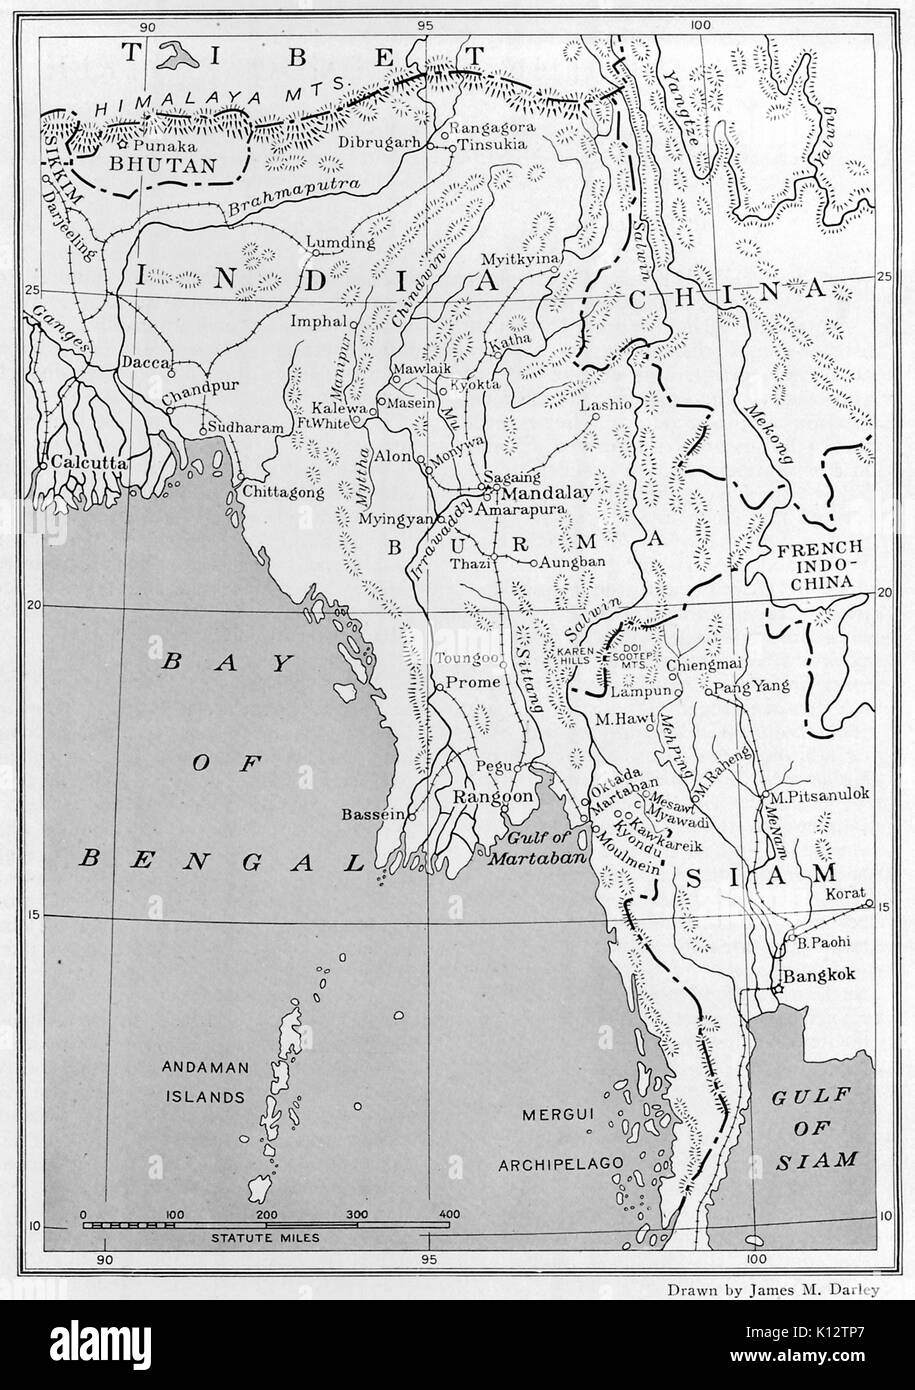 Karte von Burma (heute Myanmar), die Bucht von Bengalen, Siam (heute Thailand), Indien, China, Tibet und anderen Bereichen, in Südostasien, China, 1922. Stockfoto